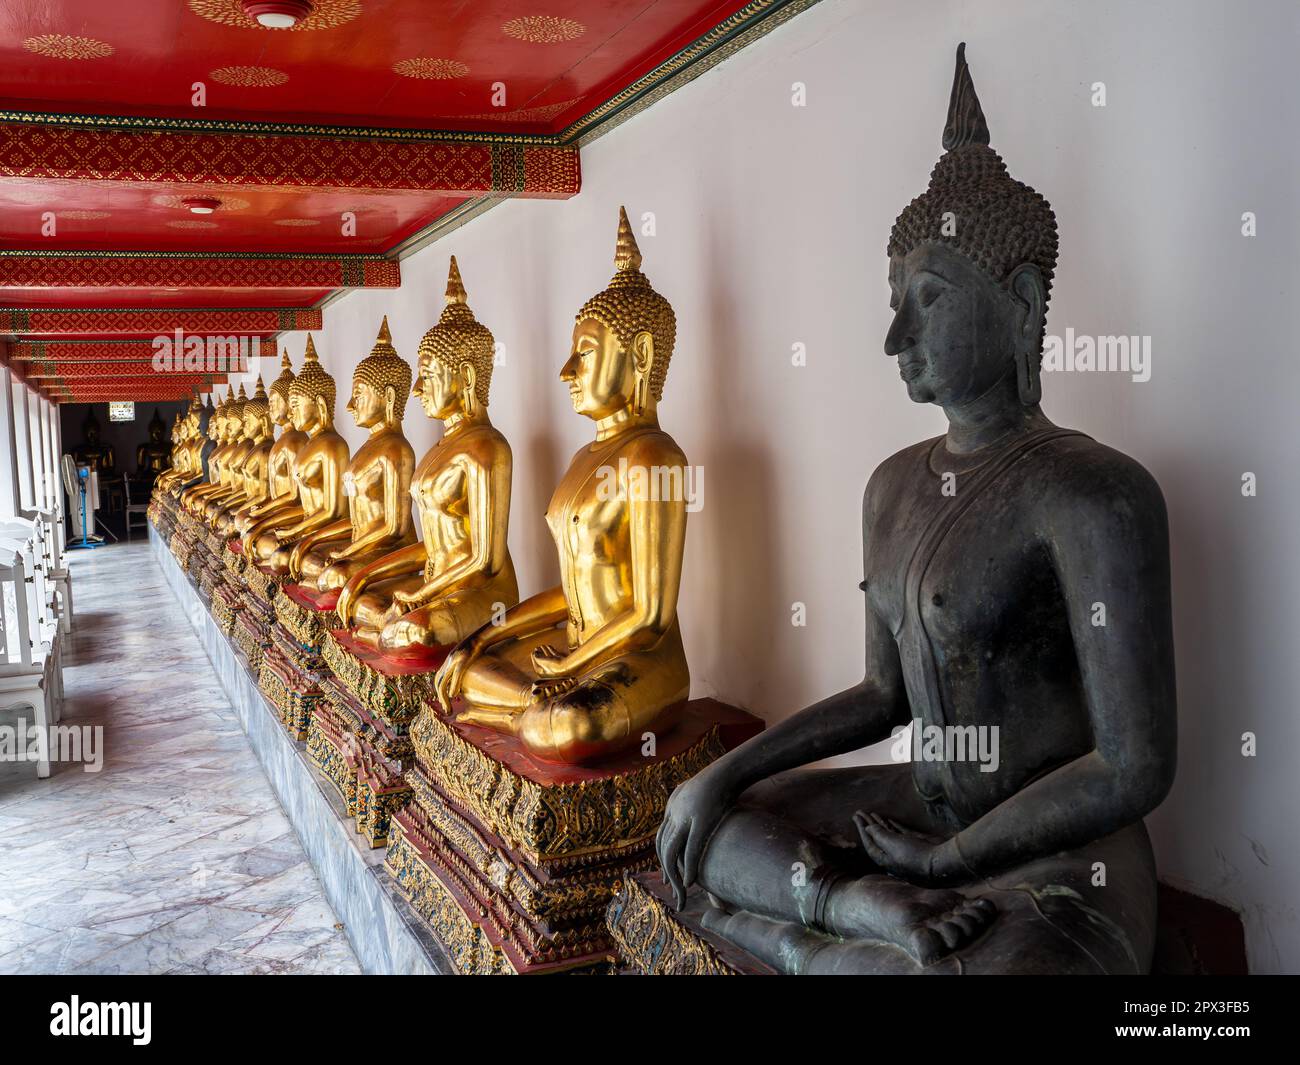 Goldene Buddha-Statuen in einer langen Schlange mit einer schwarzen Statue, die sich entlang einer Mauer am Wat Pho Tempel in Bangkok, Thailand, erhebt. Stockfoto